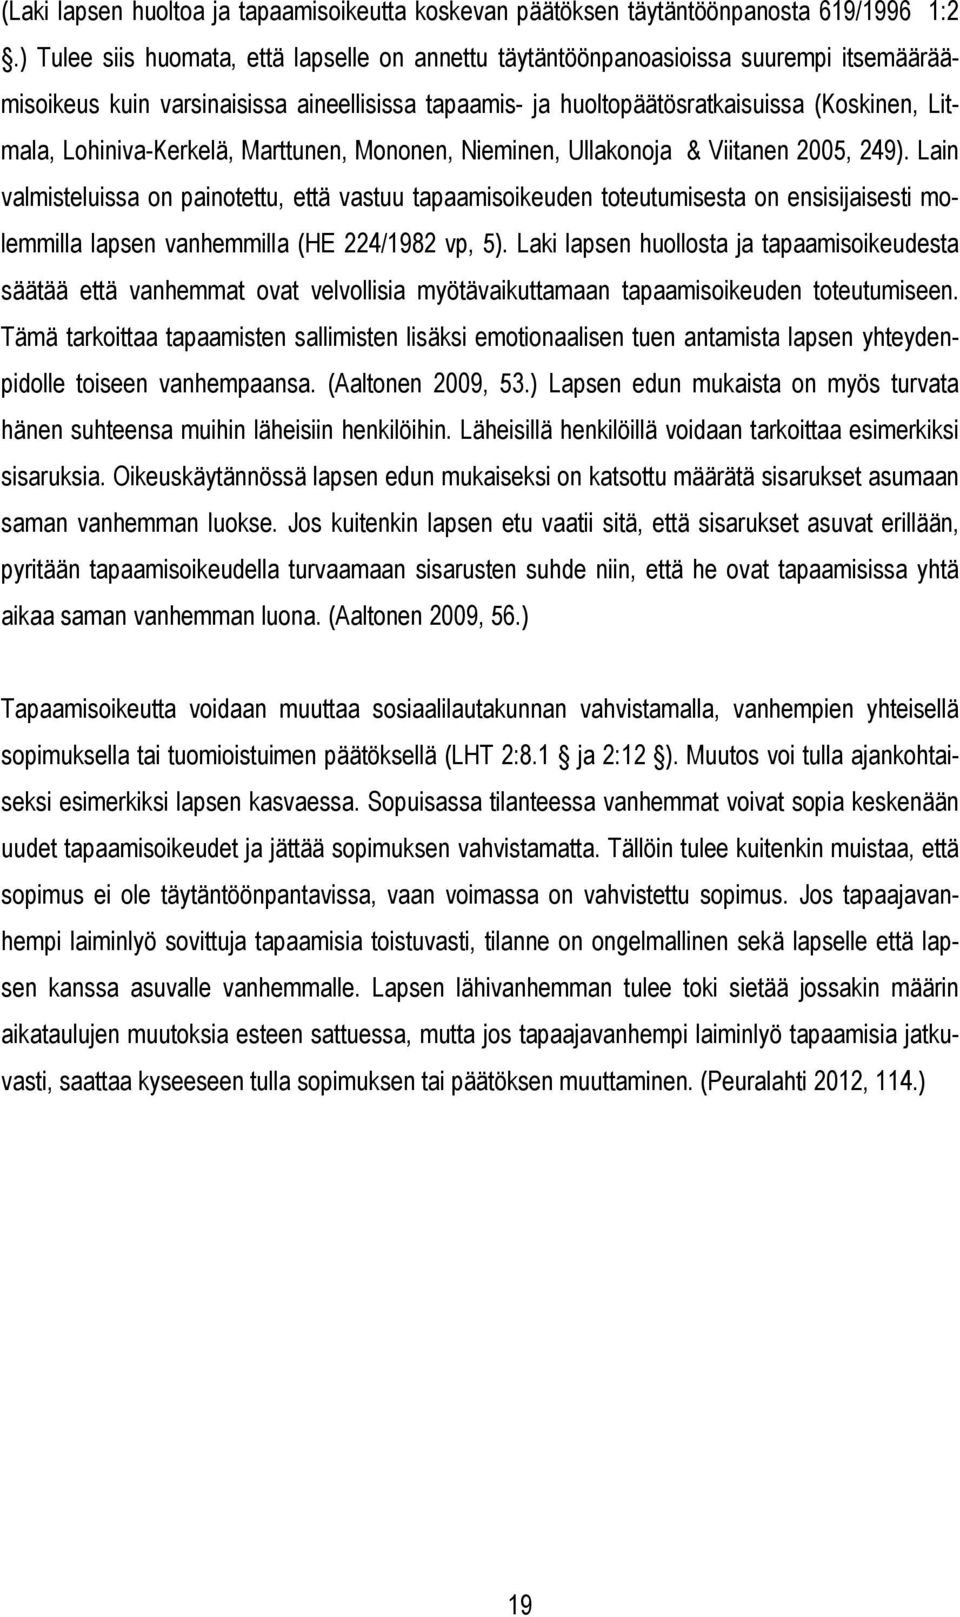 Lohiniva-Kerkelä, Marttunen, Mononen, Nieminen, Ullakonoja & Viitanen 2005, 249).